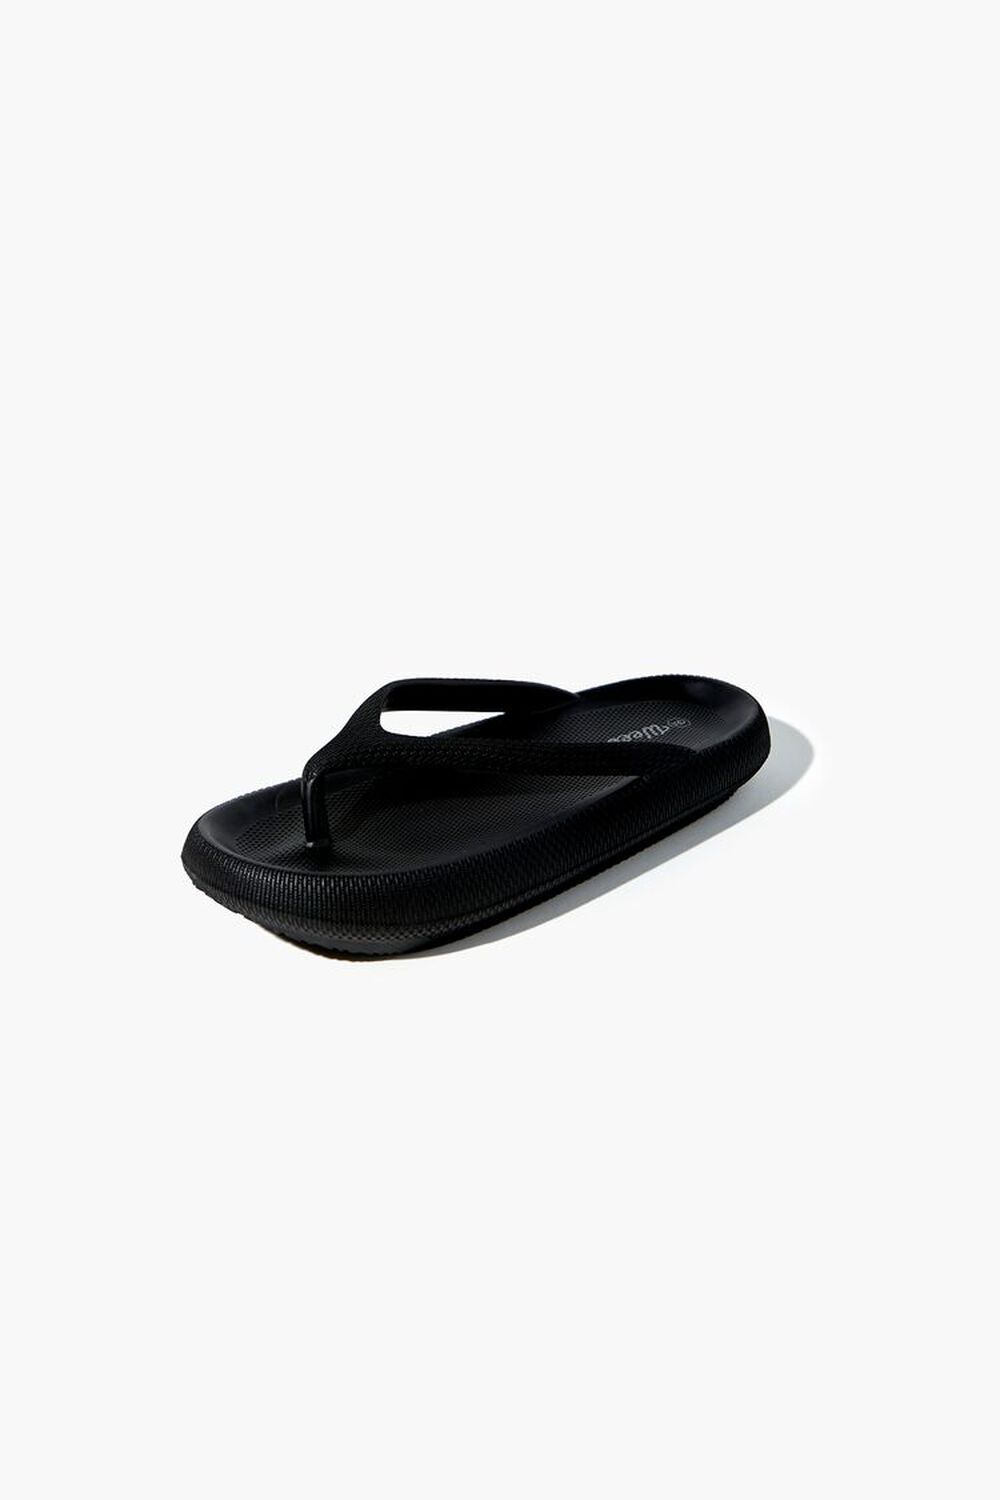 Black Foam Platform Sandals | lupon.gov.ph